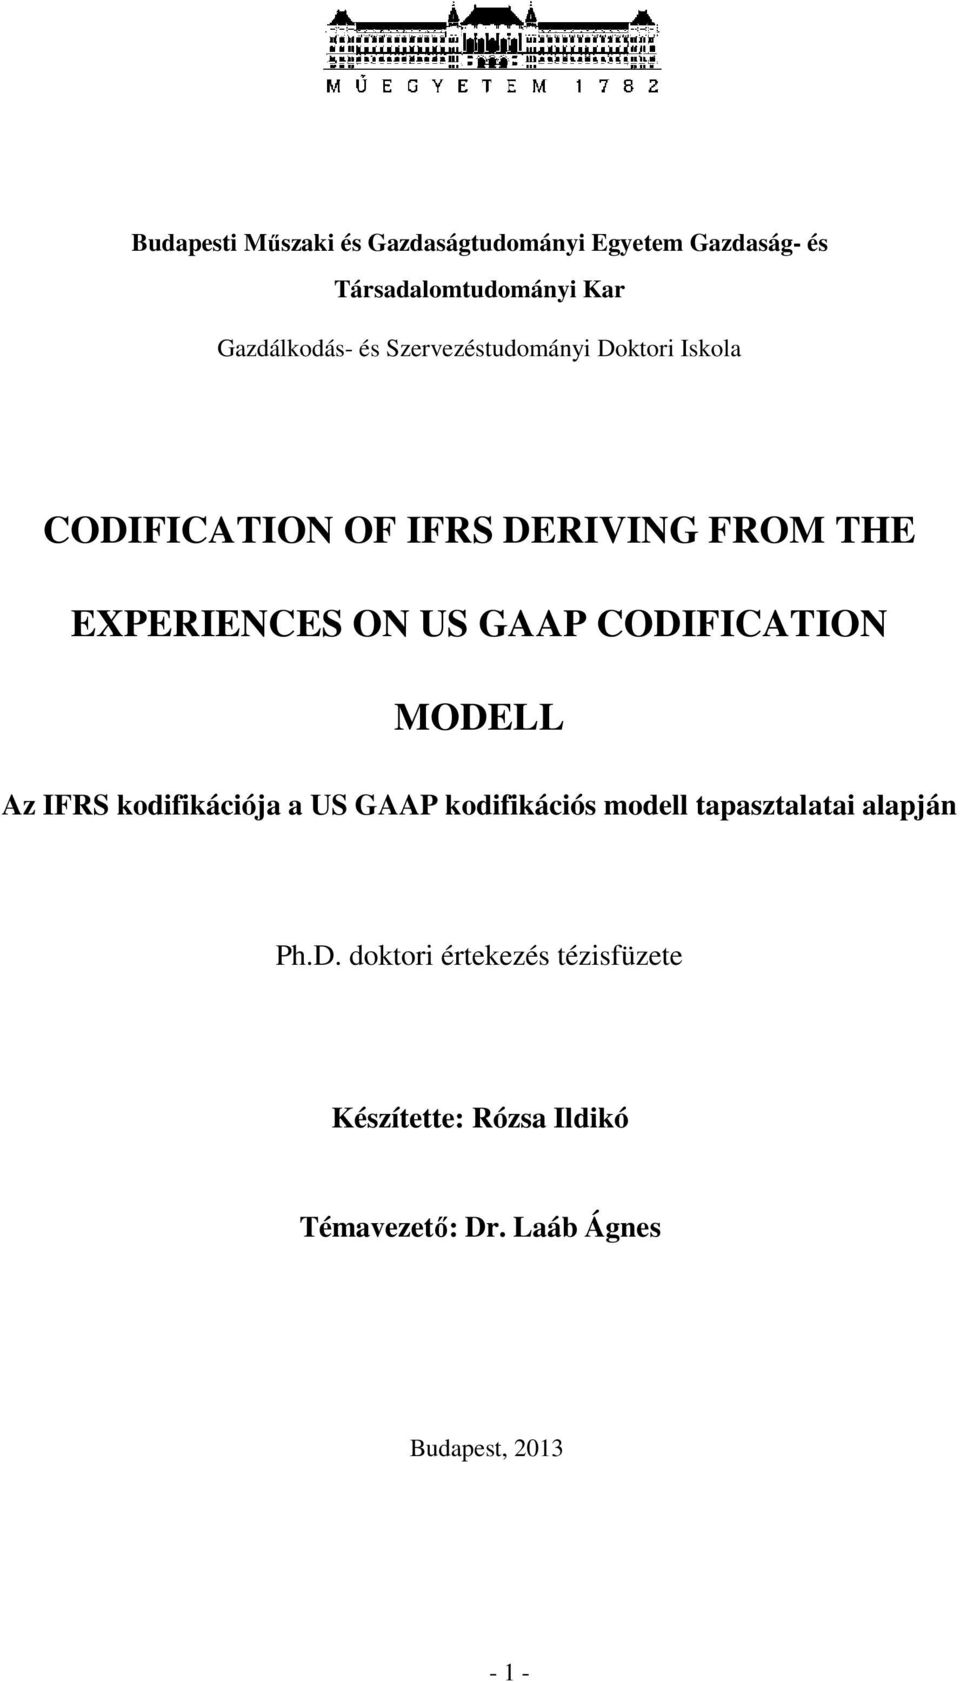 CODIFICATION MODELL Az IFRS kodifikációja a US GAAP kodifikációs modell tapasztalatai alapján Ph.D. doktori értekezés tézisfüzete Készítette: Rózsa Ildikó Témavezető: Dr.